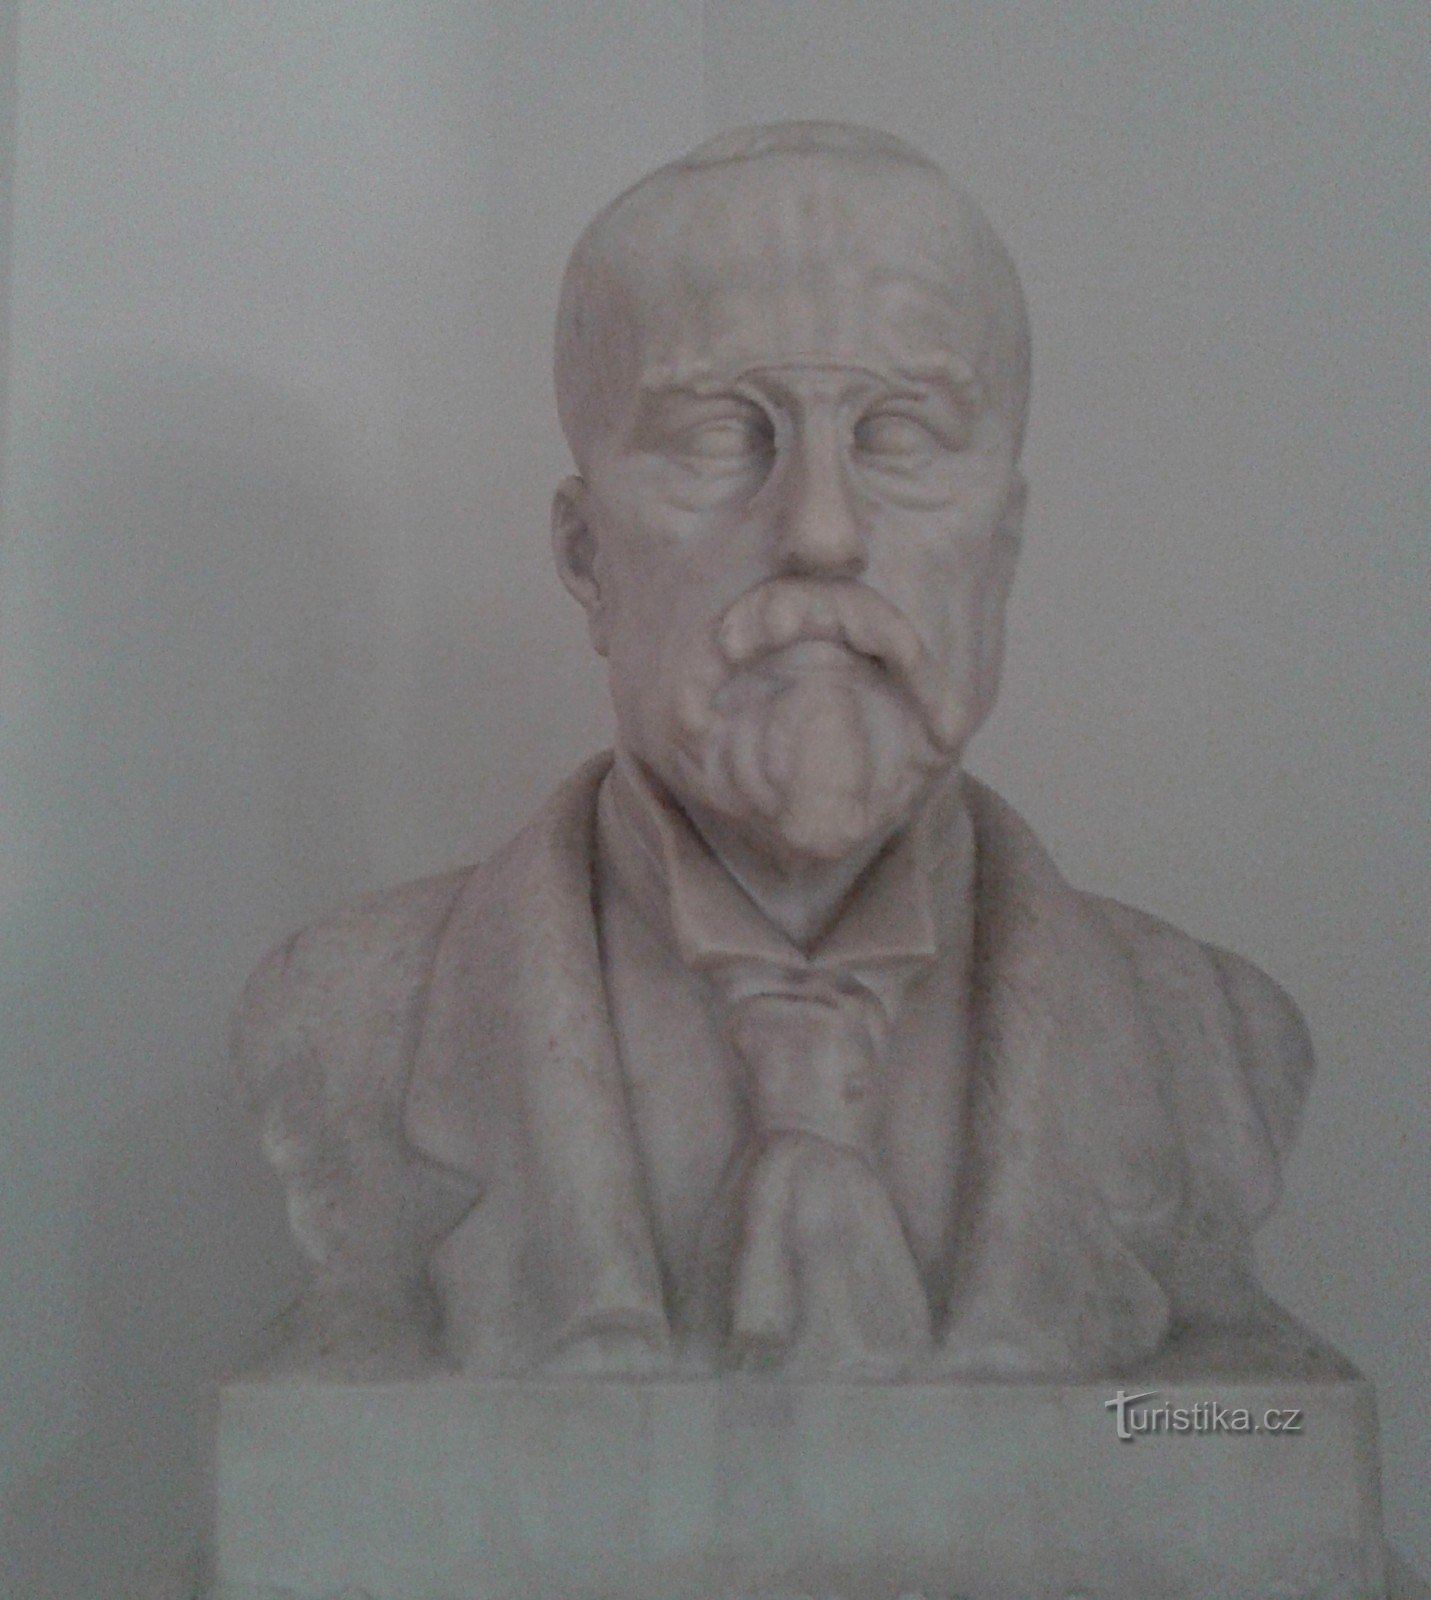 Προτομή αετού του Masaryk στην είσοδο